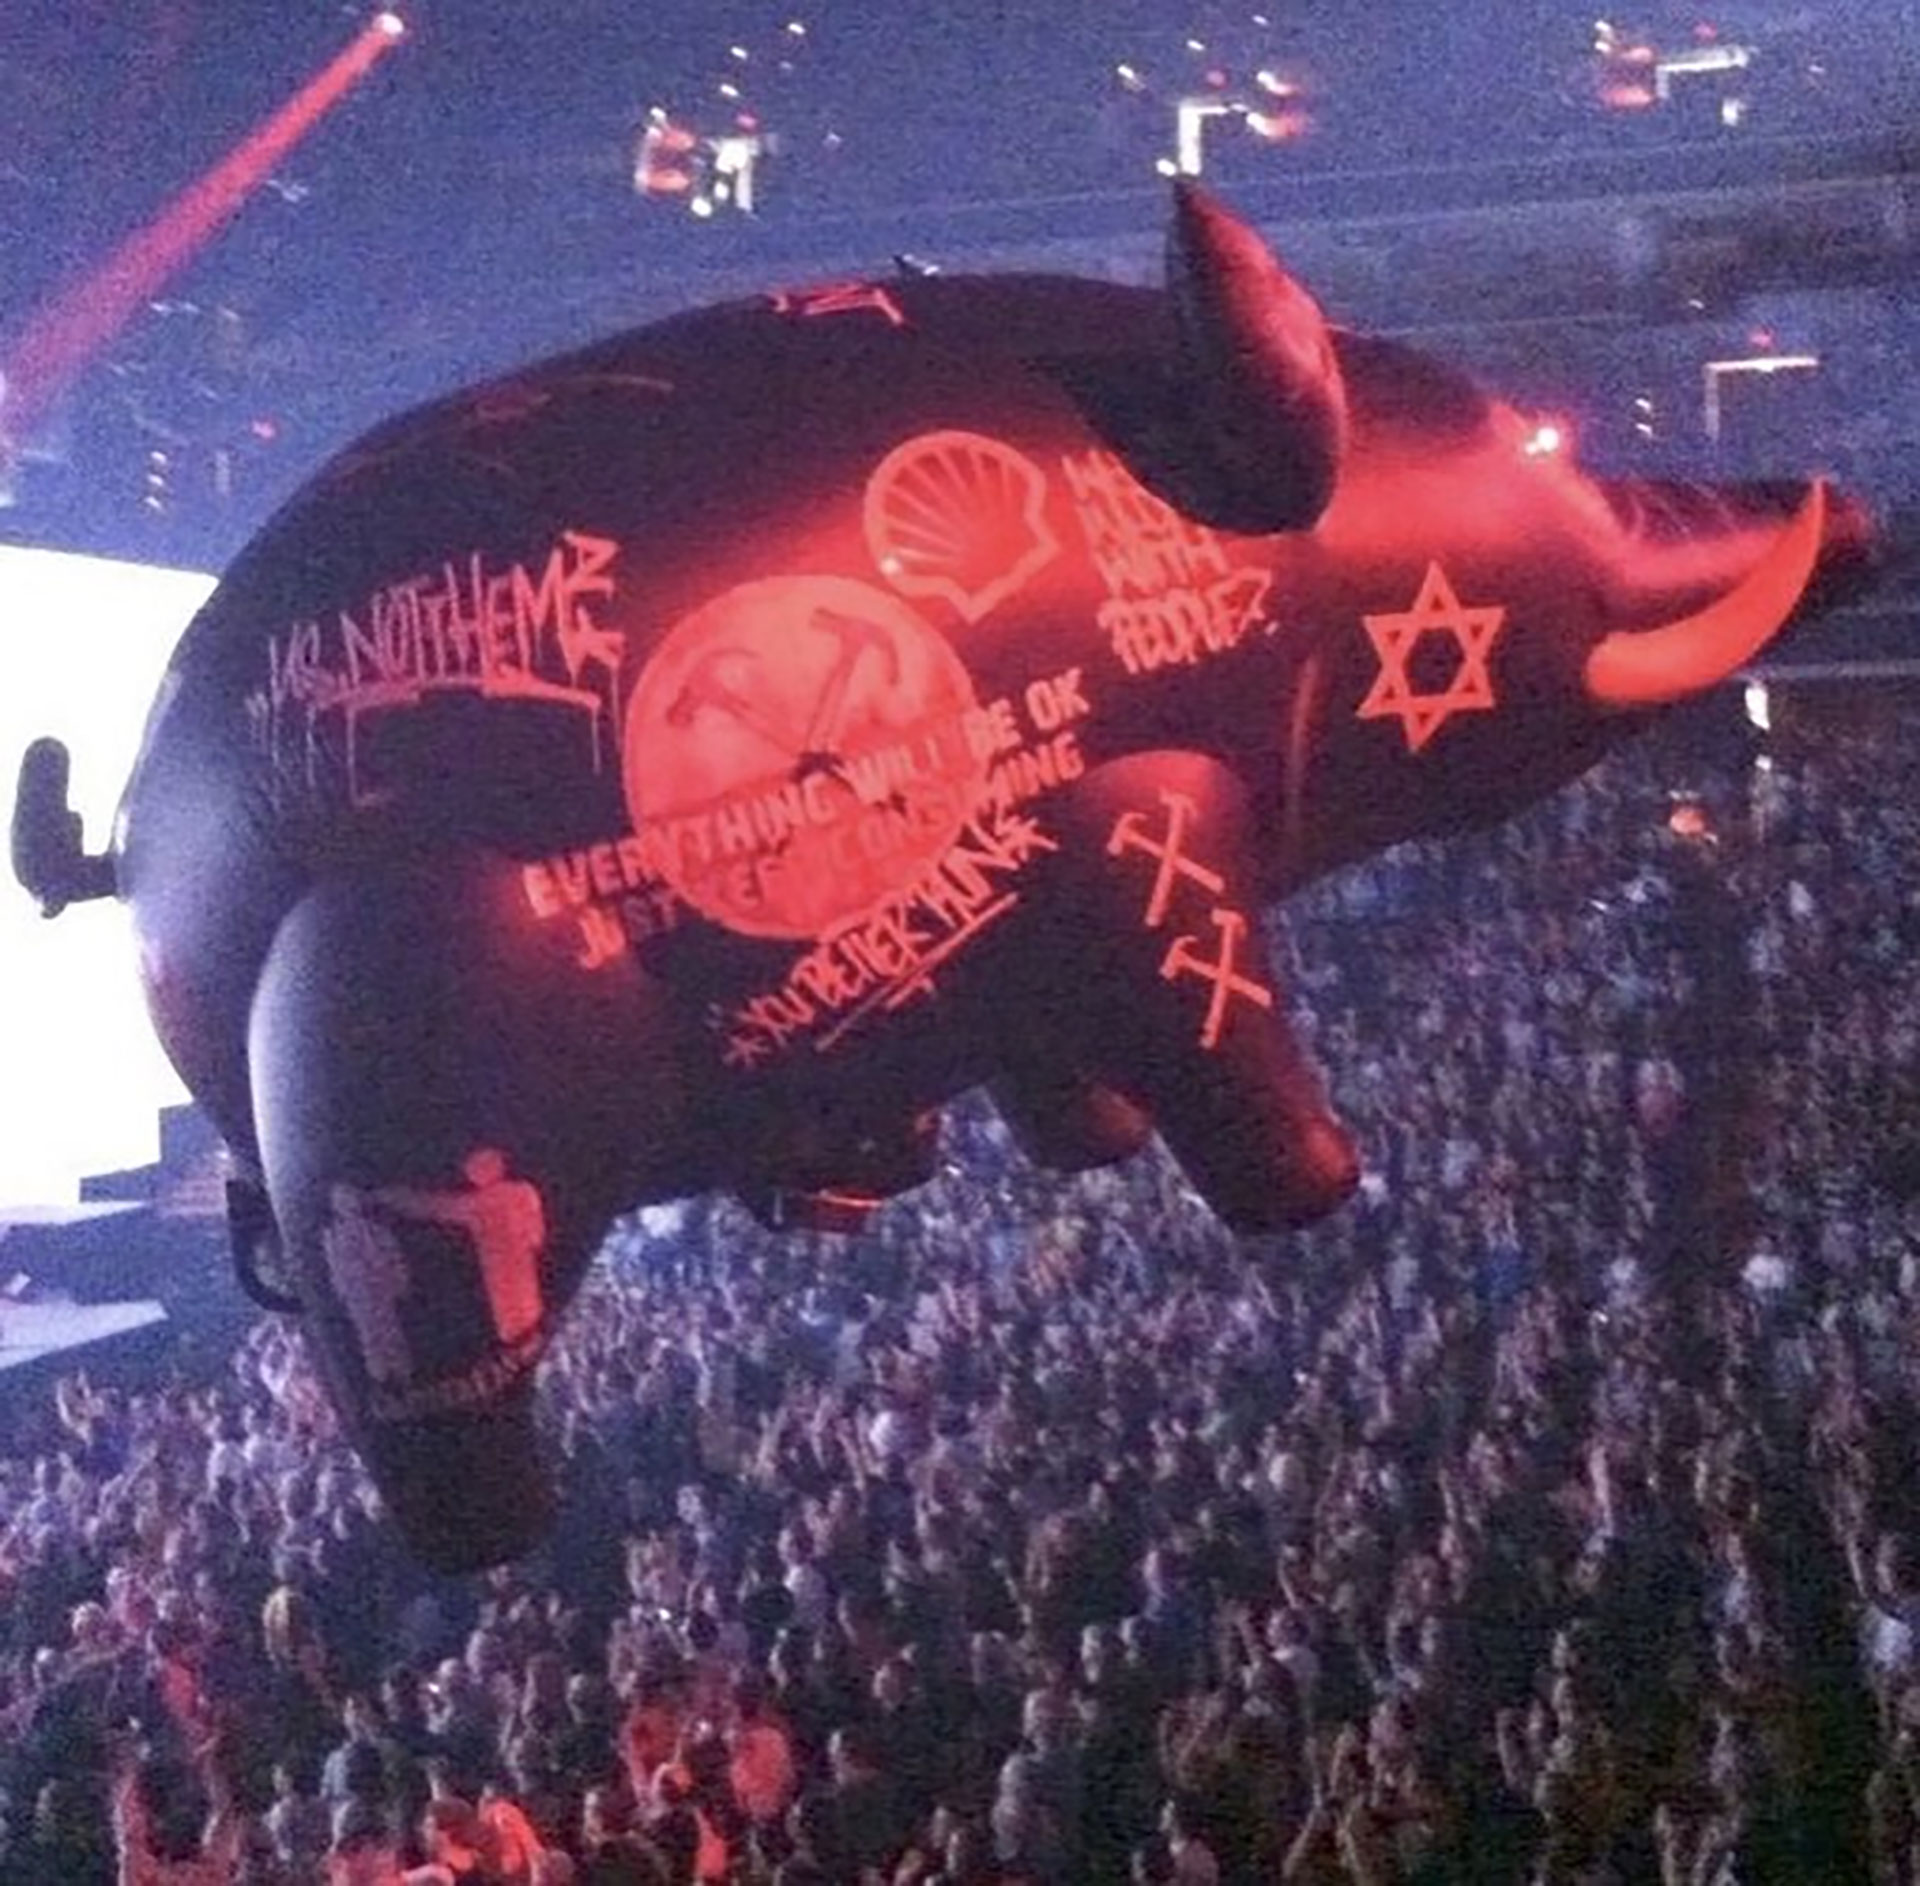 Entre la escenografía se vio un cerdo inflable gigante con palabras y símbolos como la estrella judía y pancartas al estilo del Tercer Reich con martillos cruzados en lugar de esvásticas